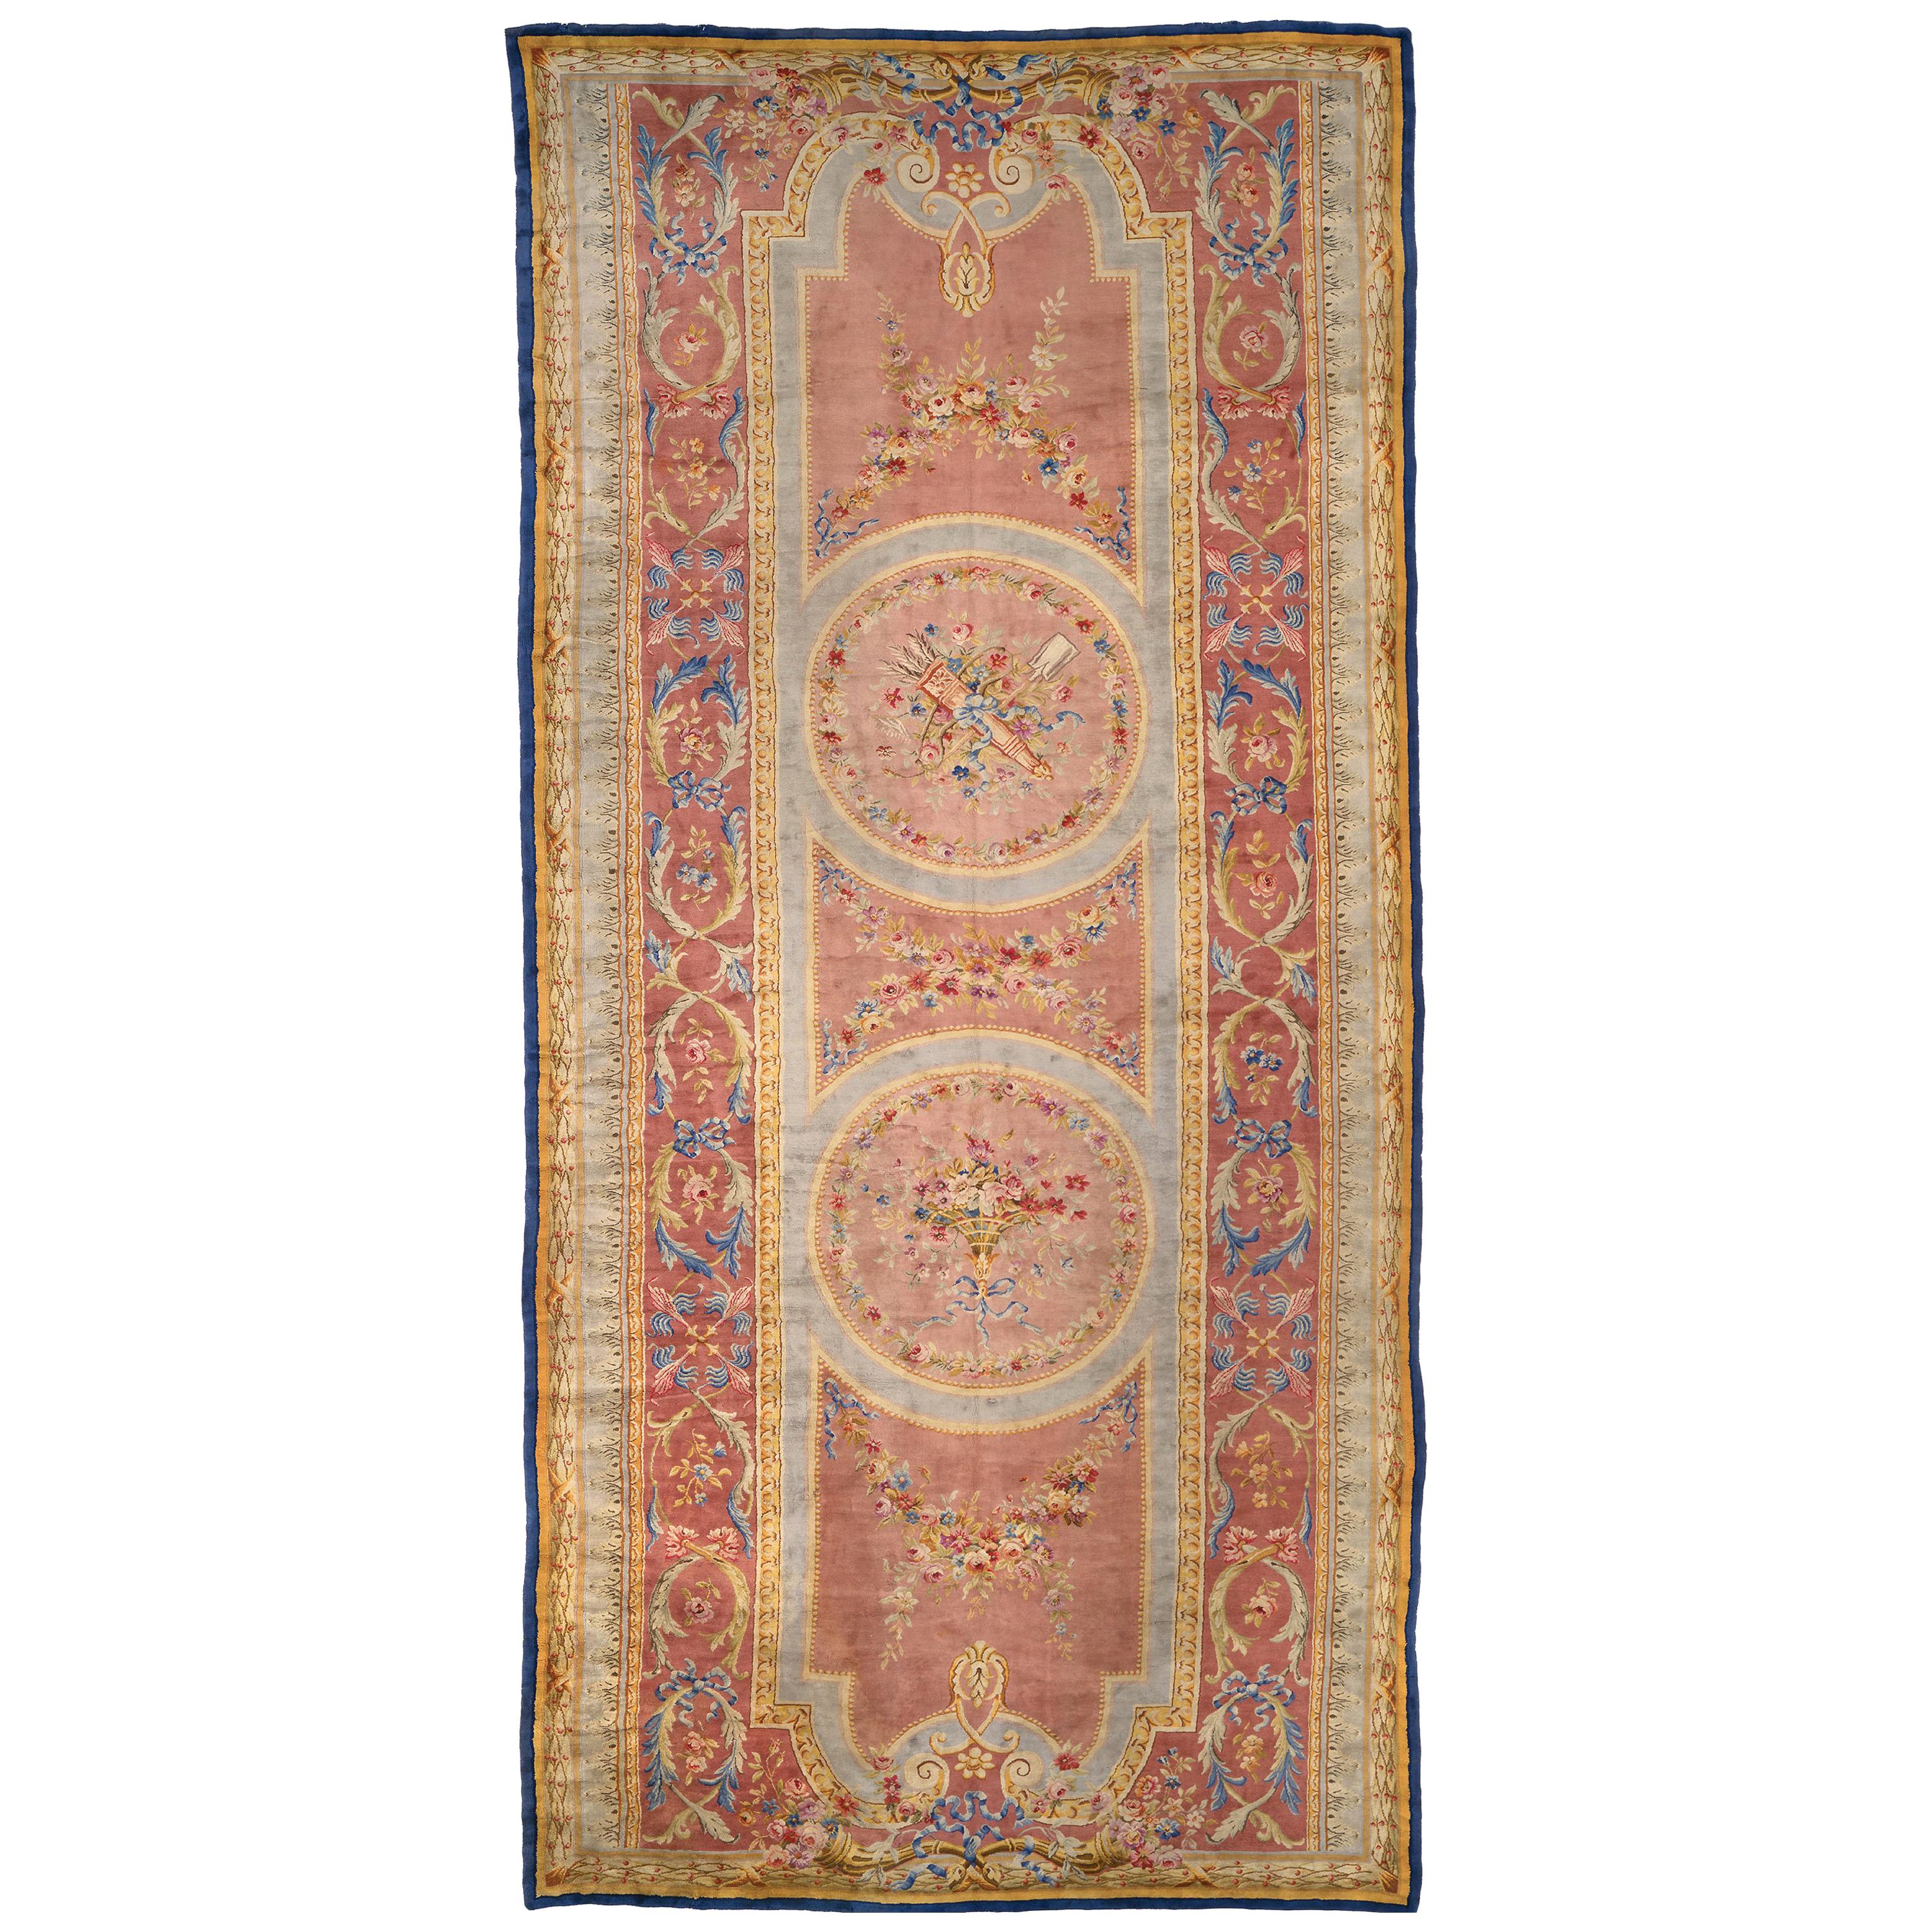 Savonnerie-Teppich aus dem späten 19. Jahrhundert